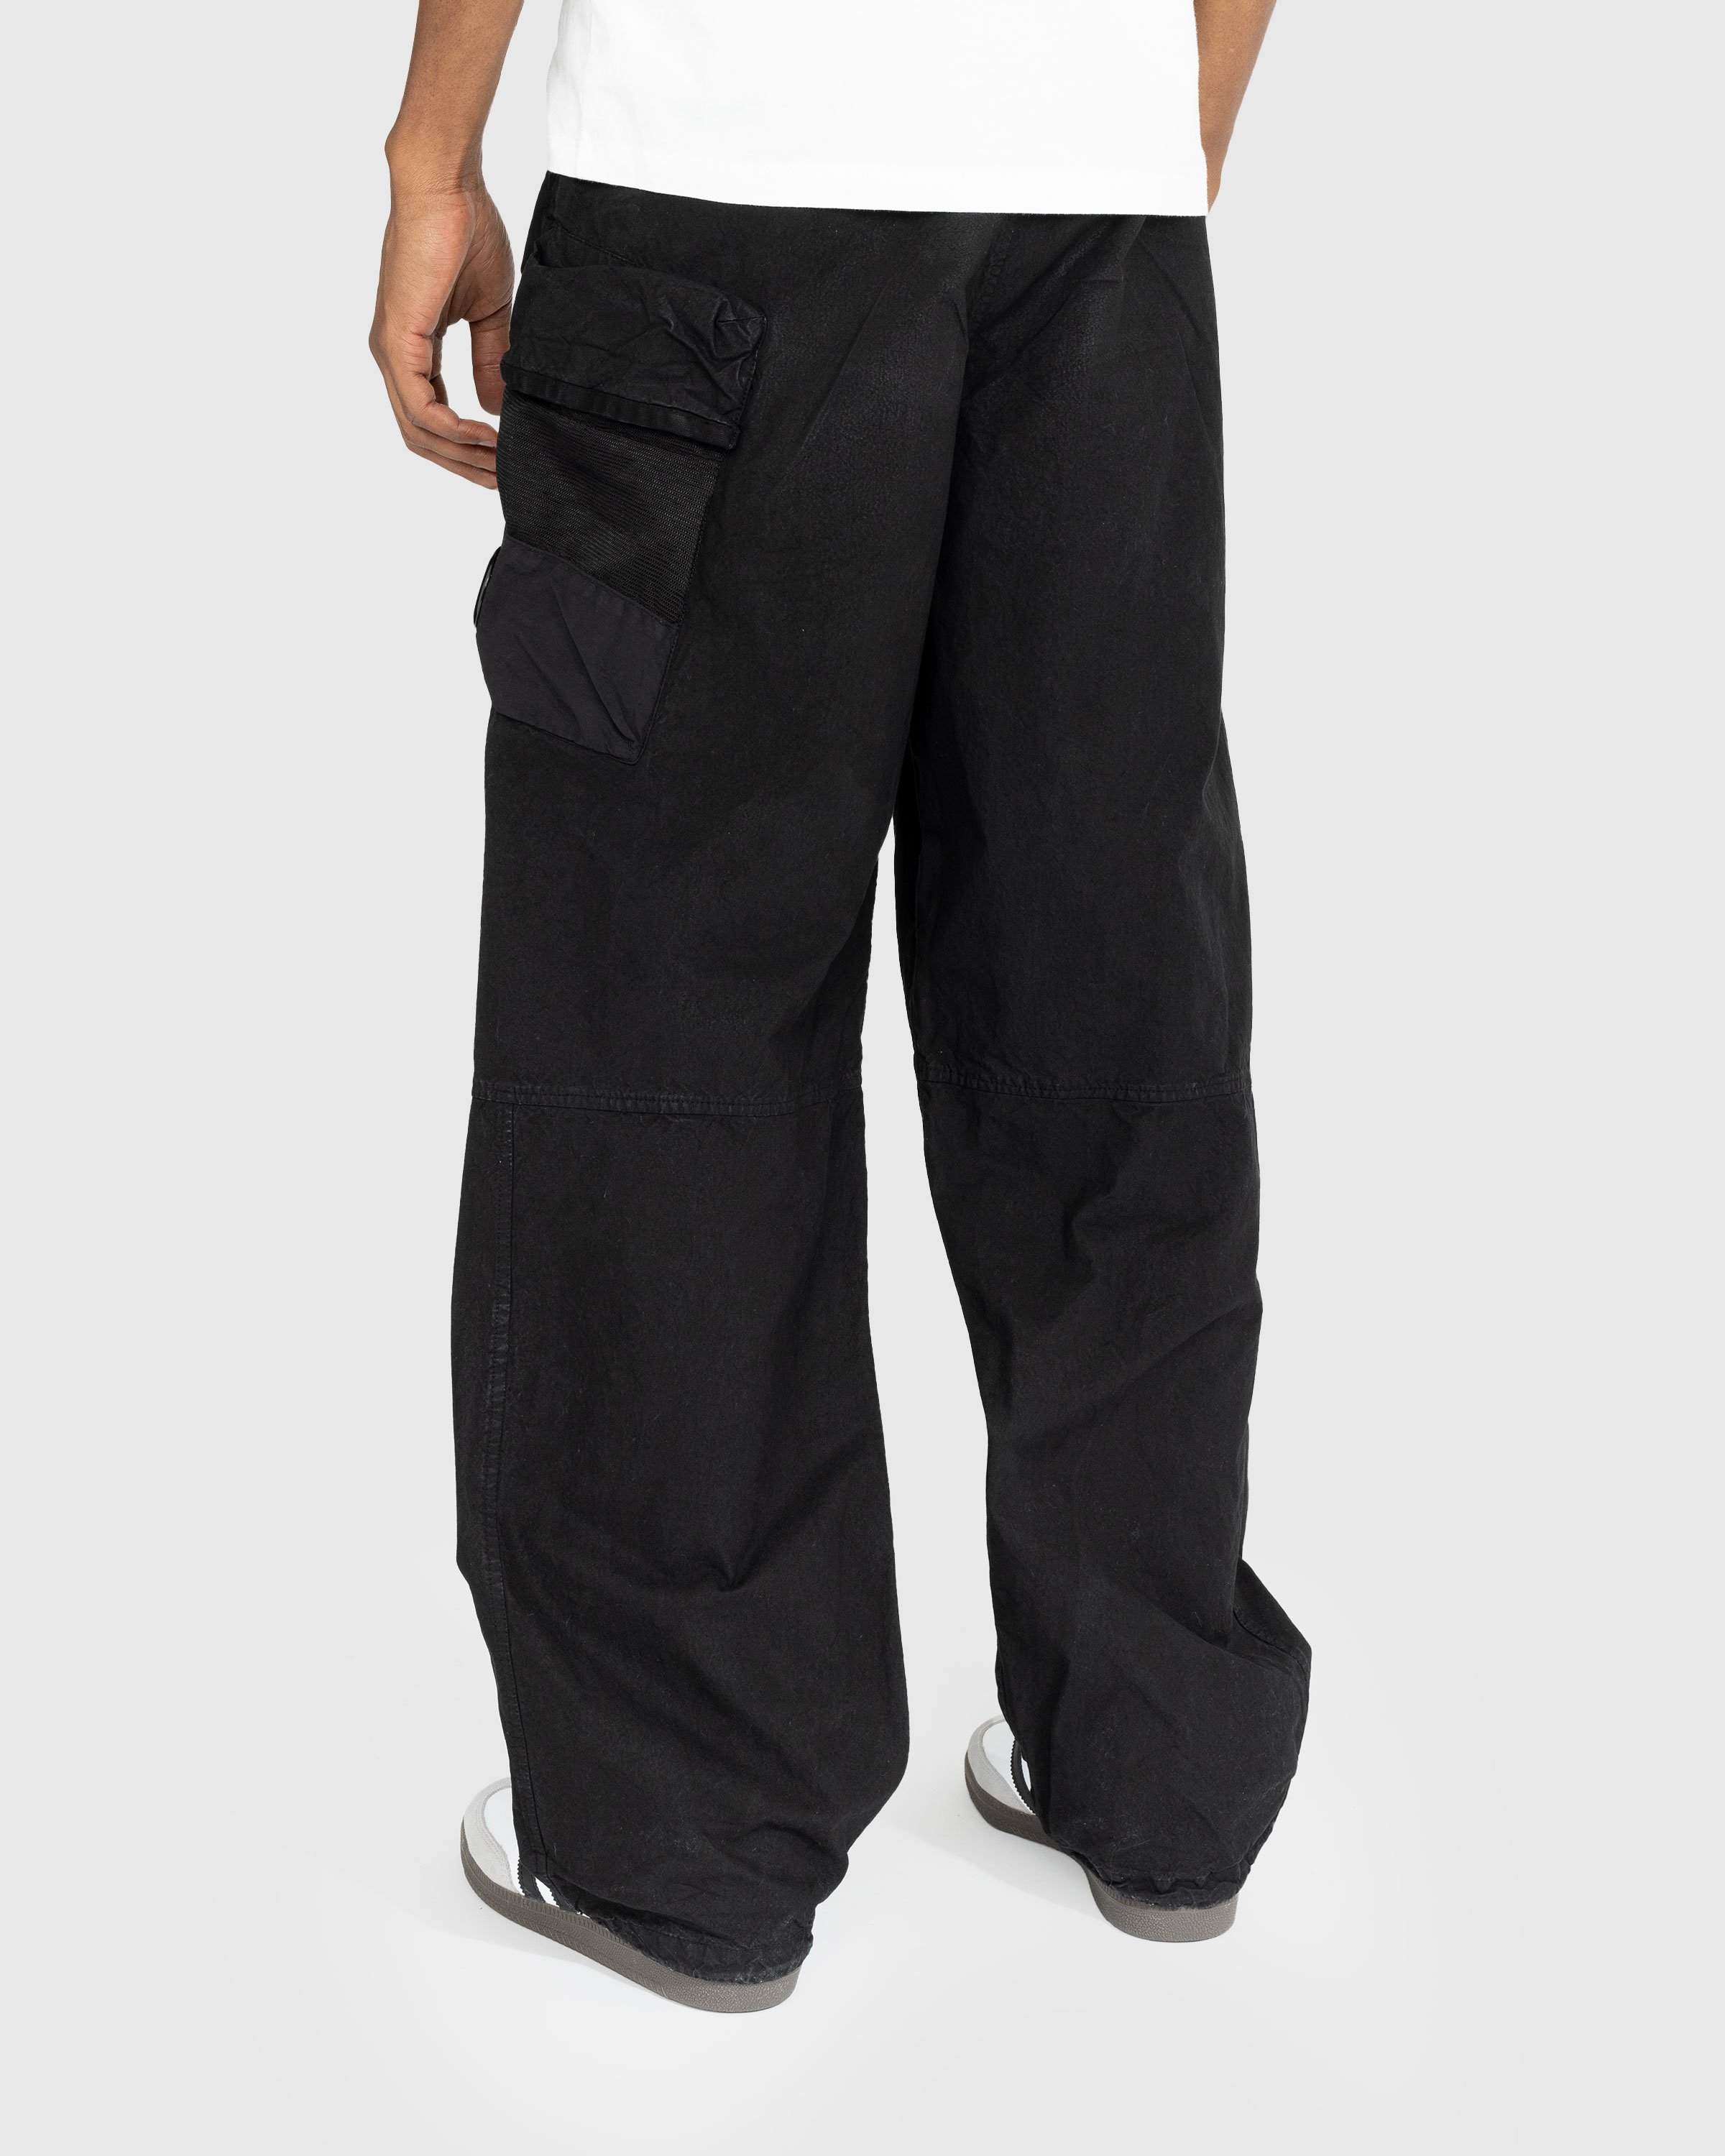 C.P. Company - Cargo Pant Black - Clothing - Black - Image 3